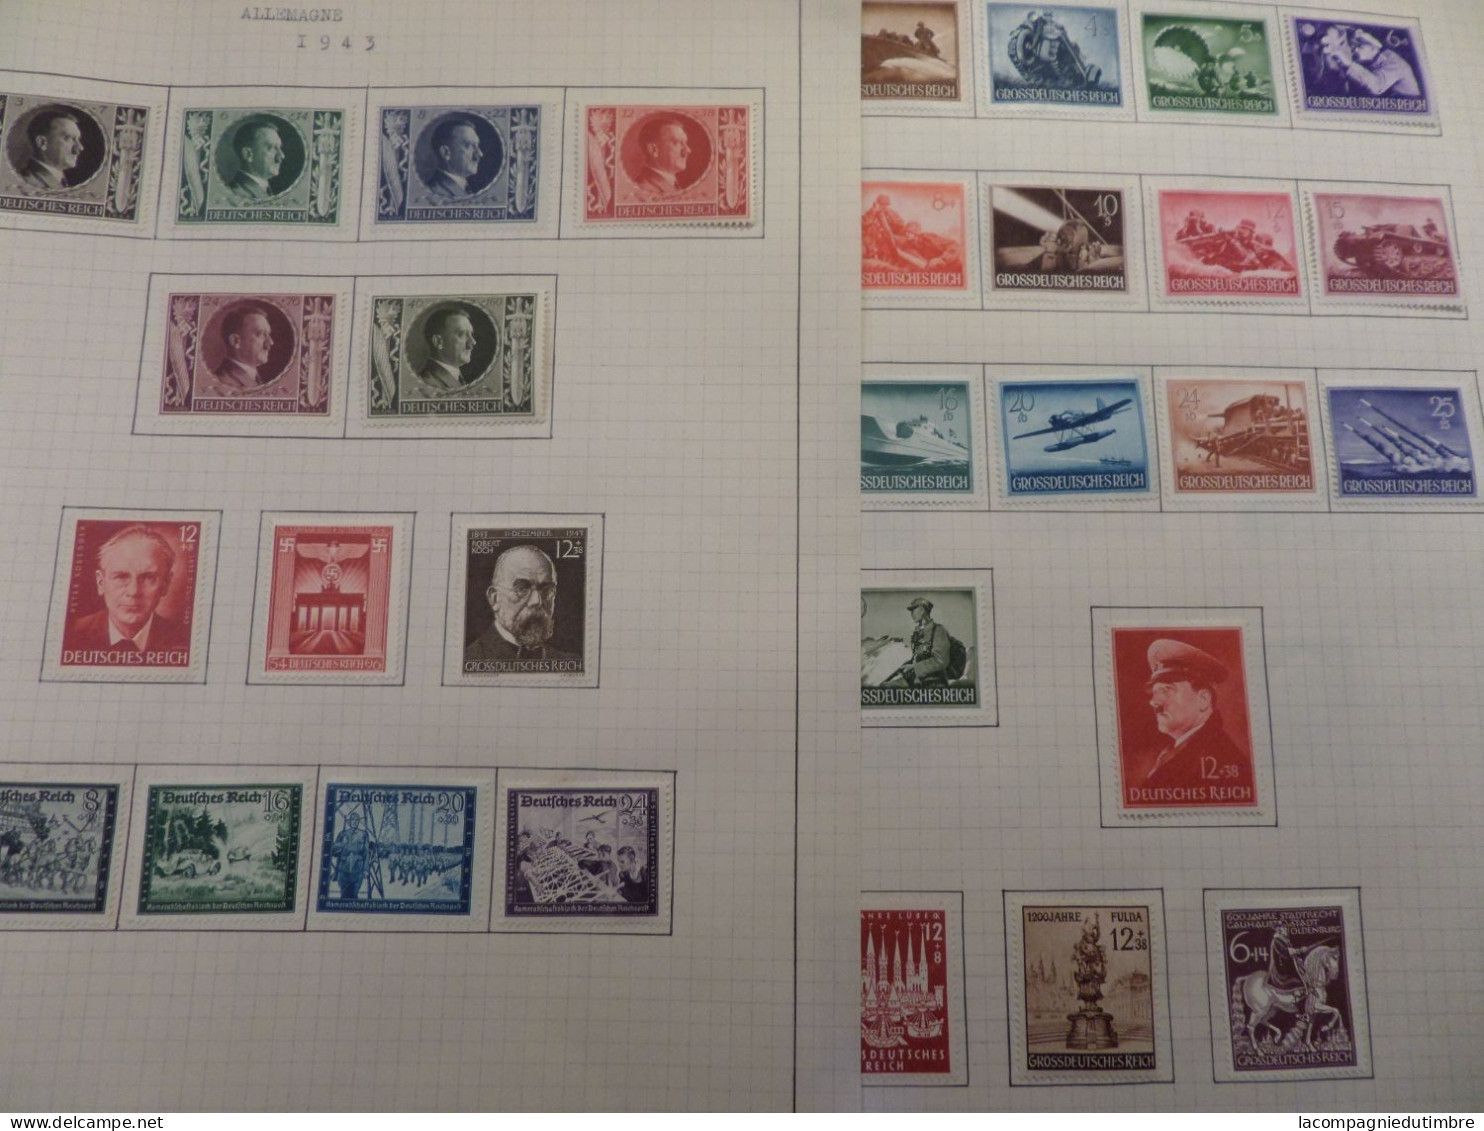 Superbe vrac de milliers de timbres anciens **/*/obl. tous pays. Classiques et bonnes valeurs.   COTE ENORME!!!!